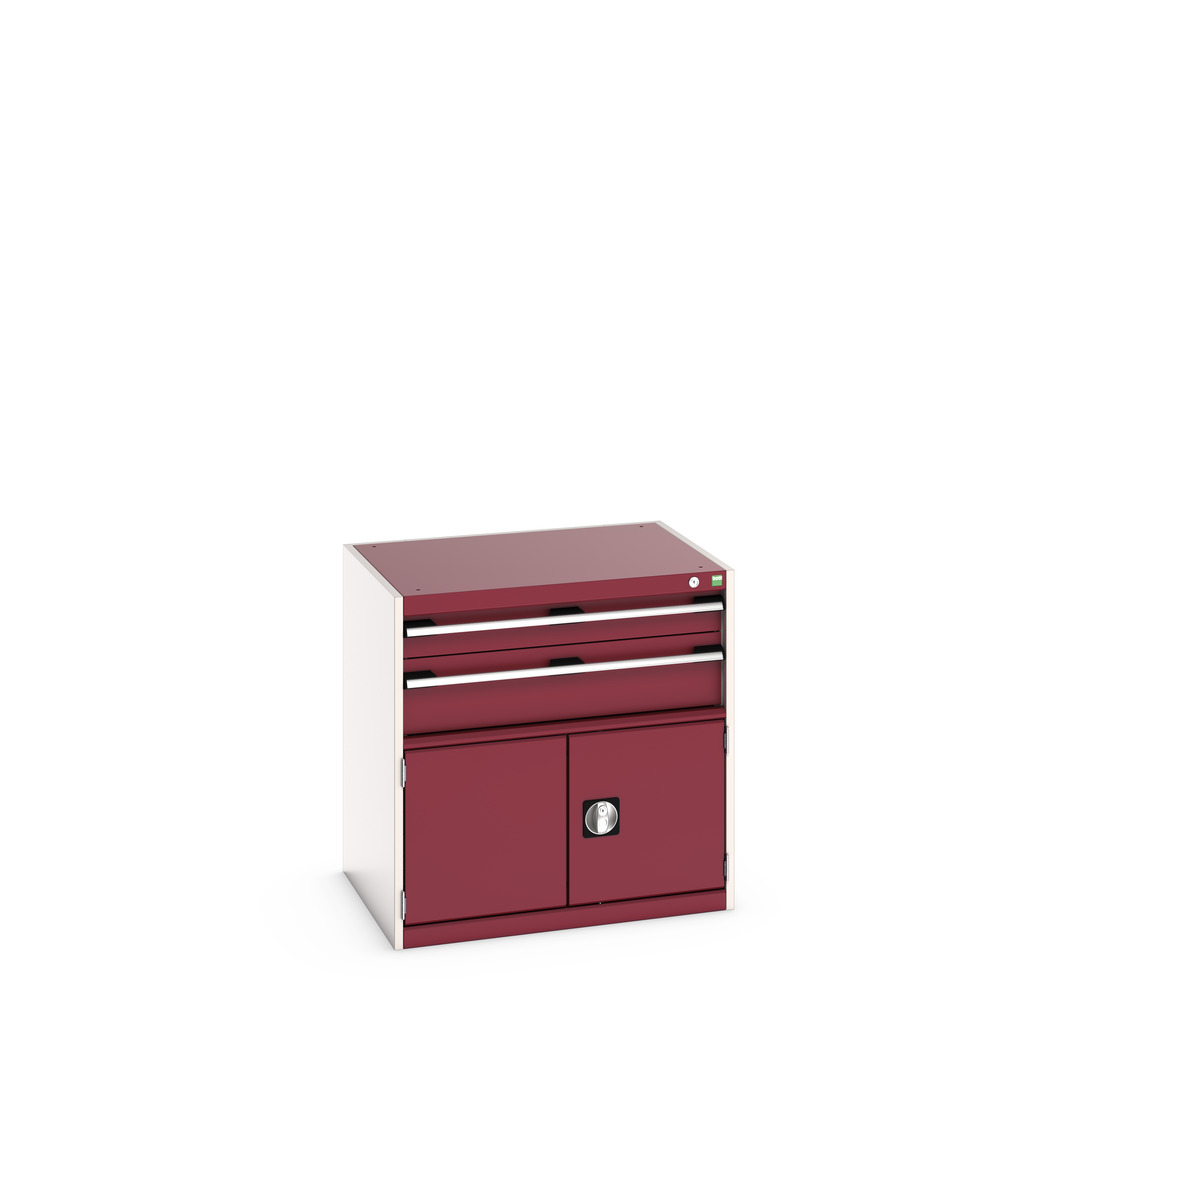 40020022.24V - cubio drawer-door cabinet